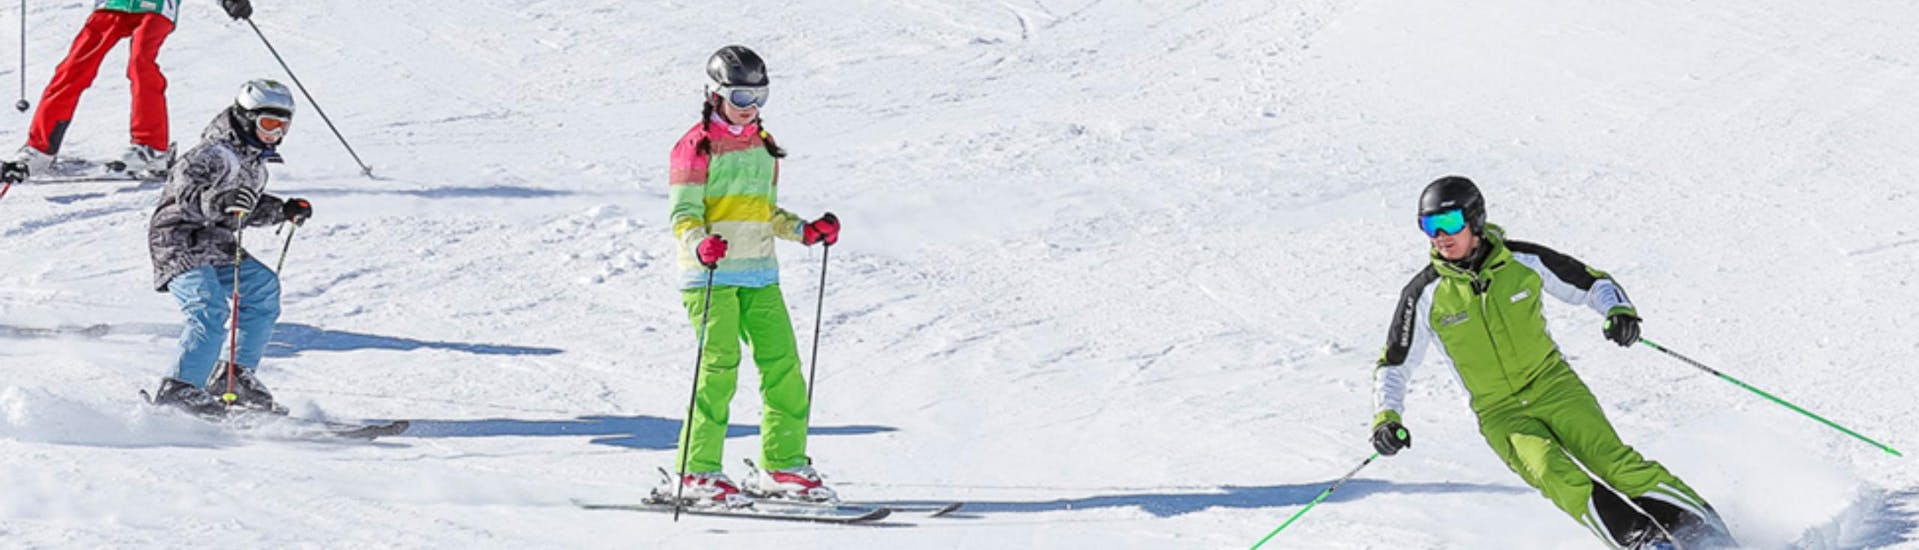 Clases de esquí para niños a partir de 11 años para todos los niveles.